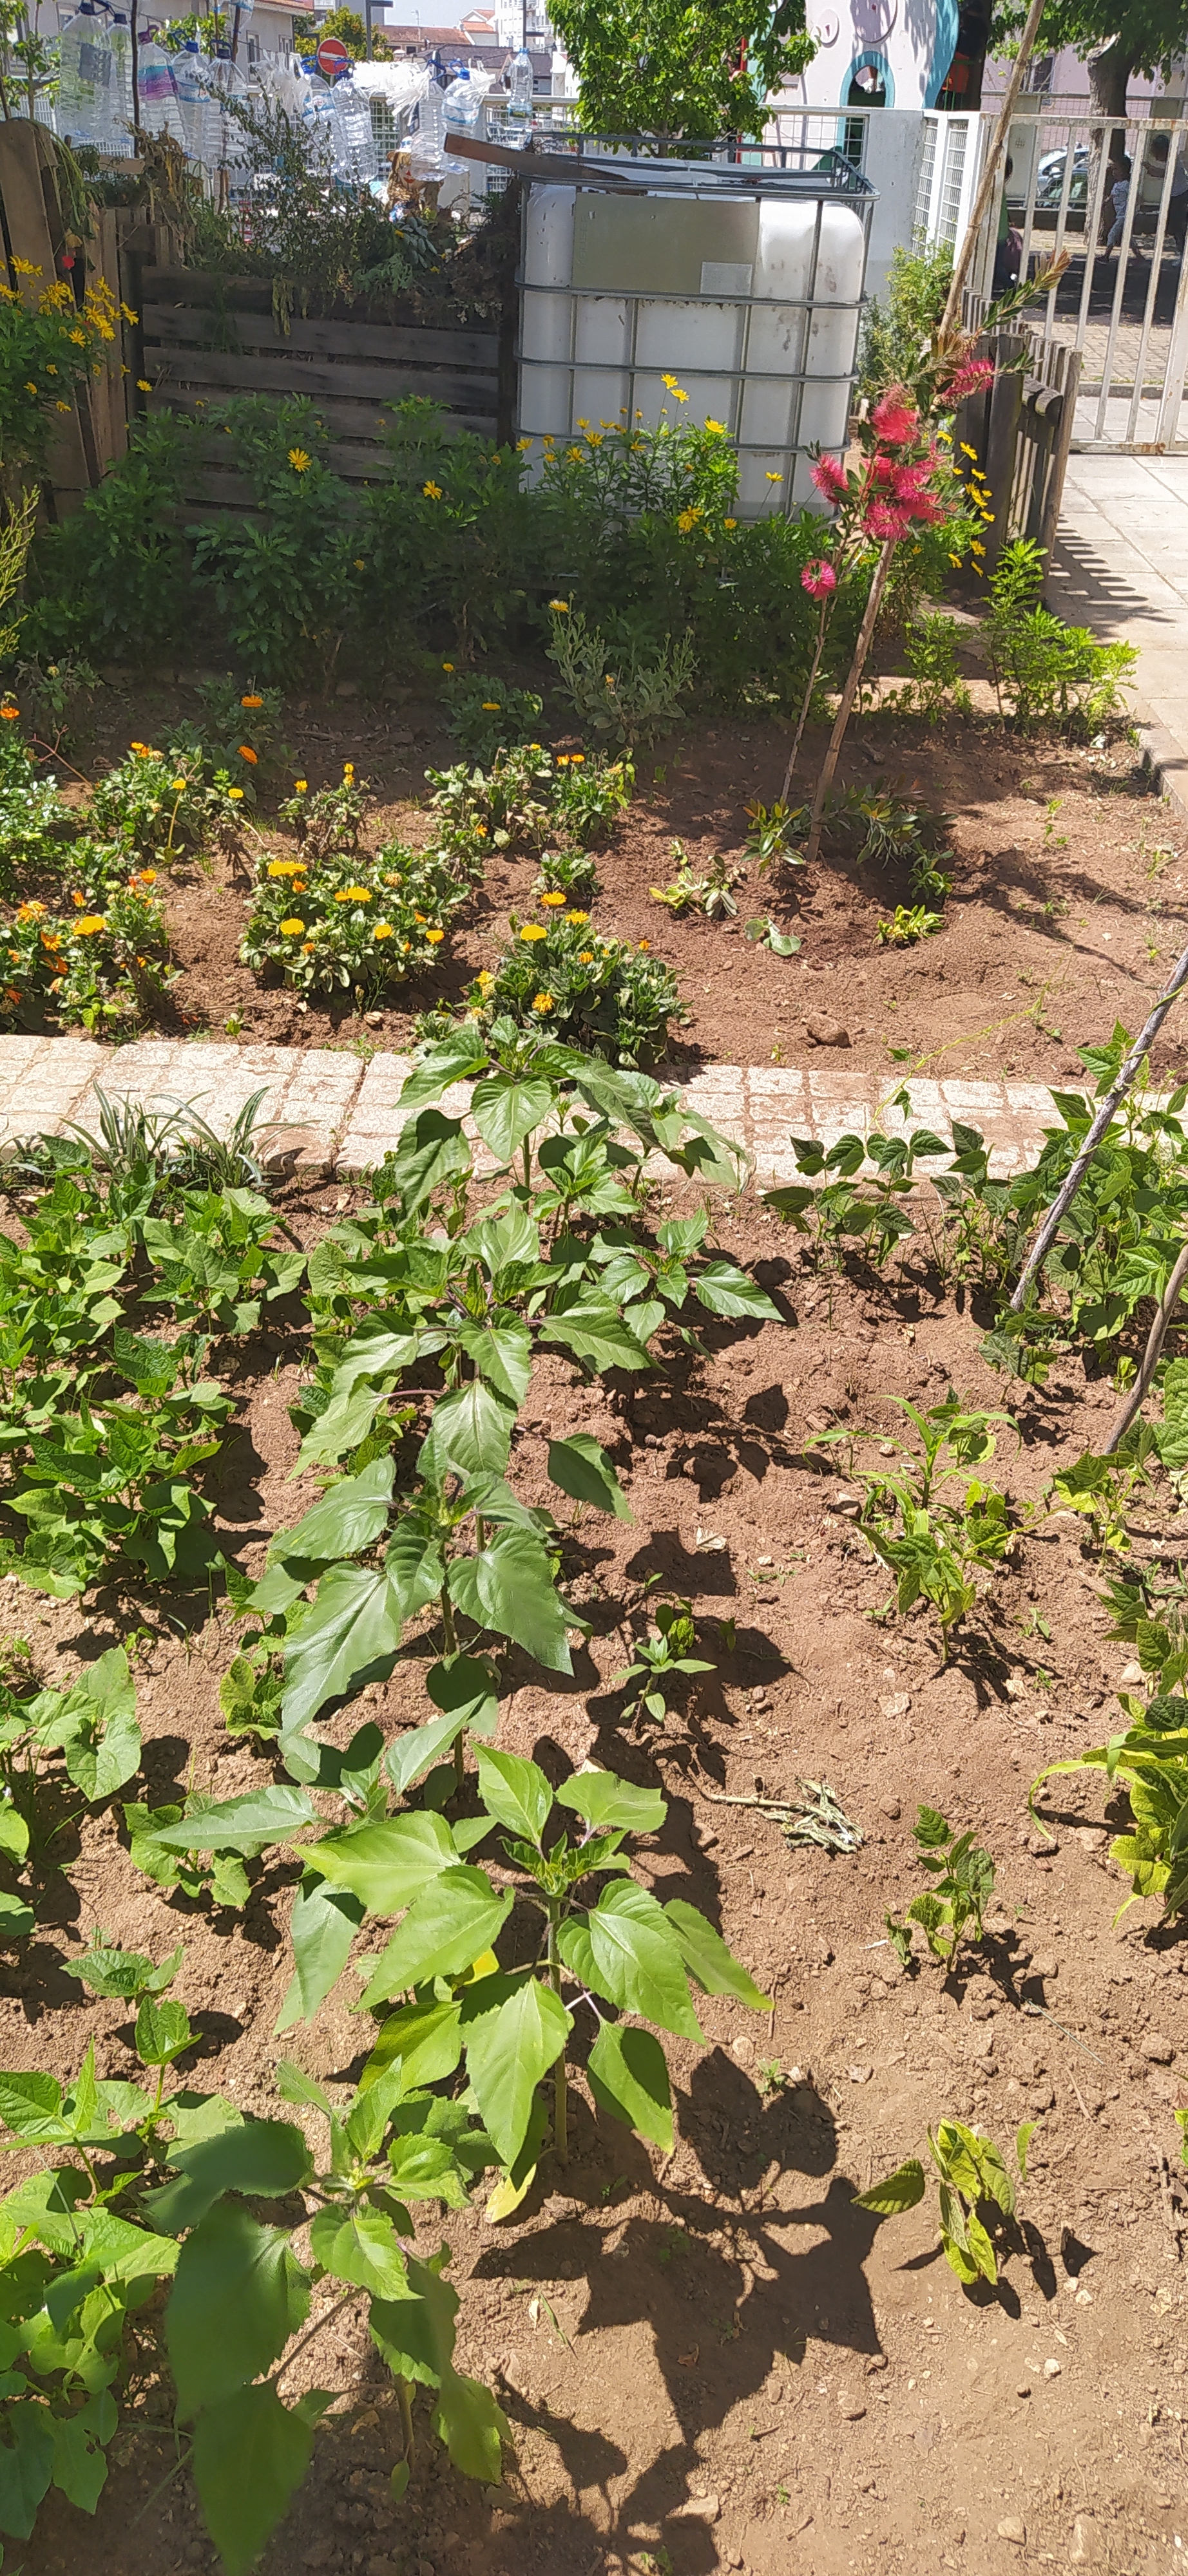 A horta foi ampliada com a colaboração de elementos da Junta de Freguesia de Águeda, e as crianças continuam as suas plantações. Plantaram-se mais tomateiros, girassóis e plantas que embelezam e permitem a Biodiversidade.